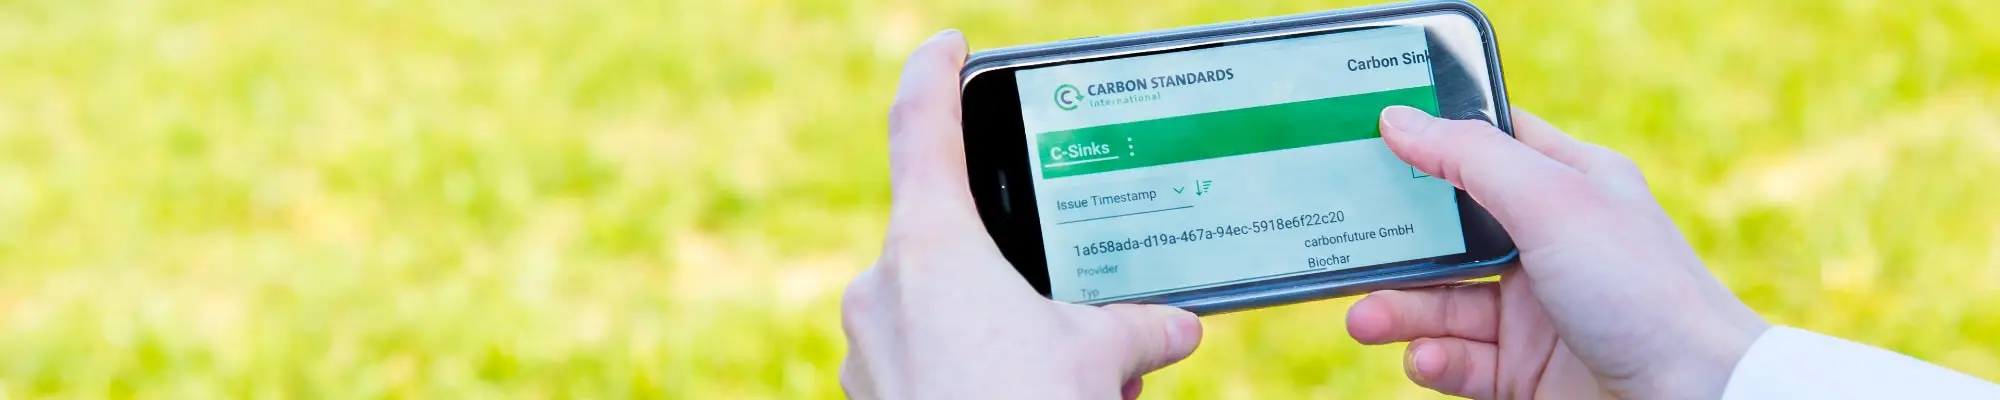 HEADER carbon sink Registry on cellphone